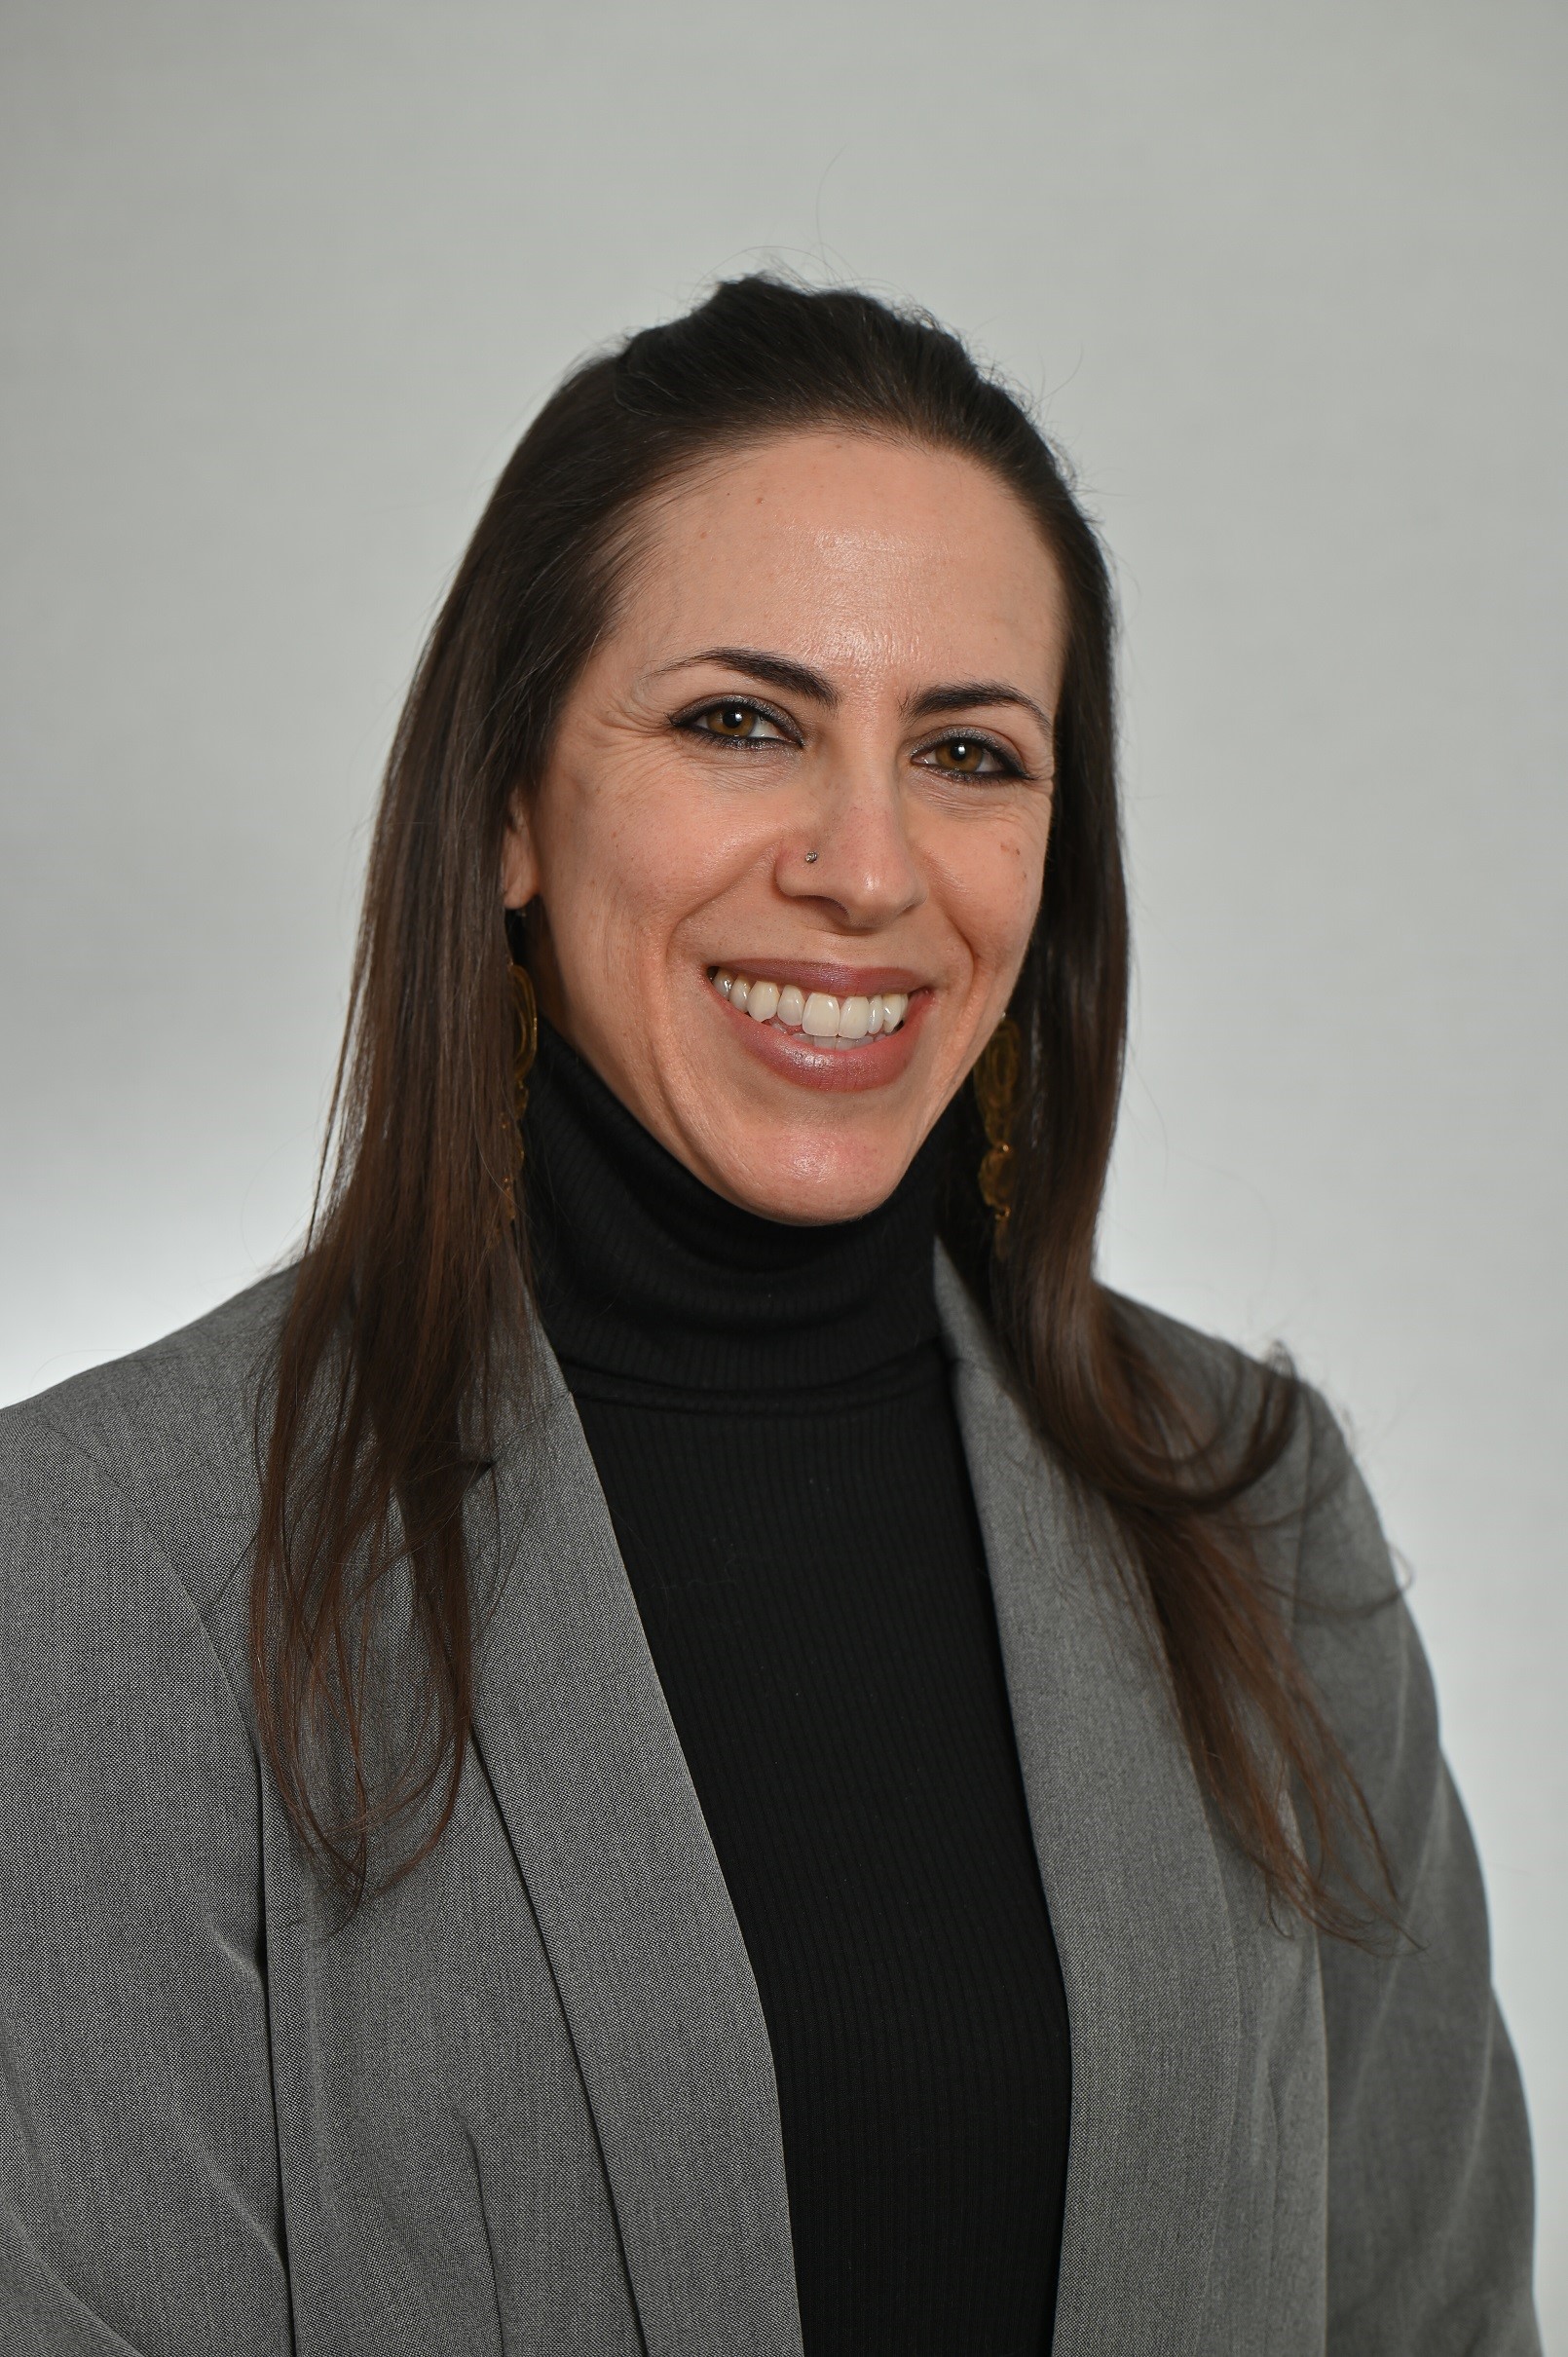 Ms. Farrah Altuve, PA-C